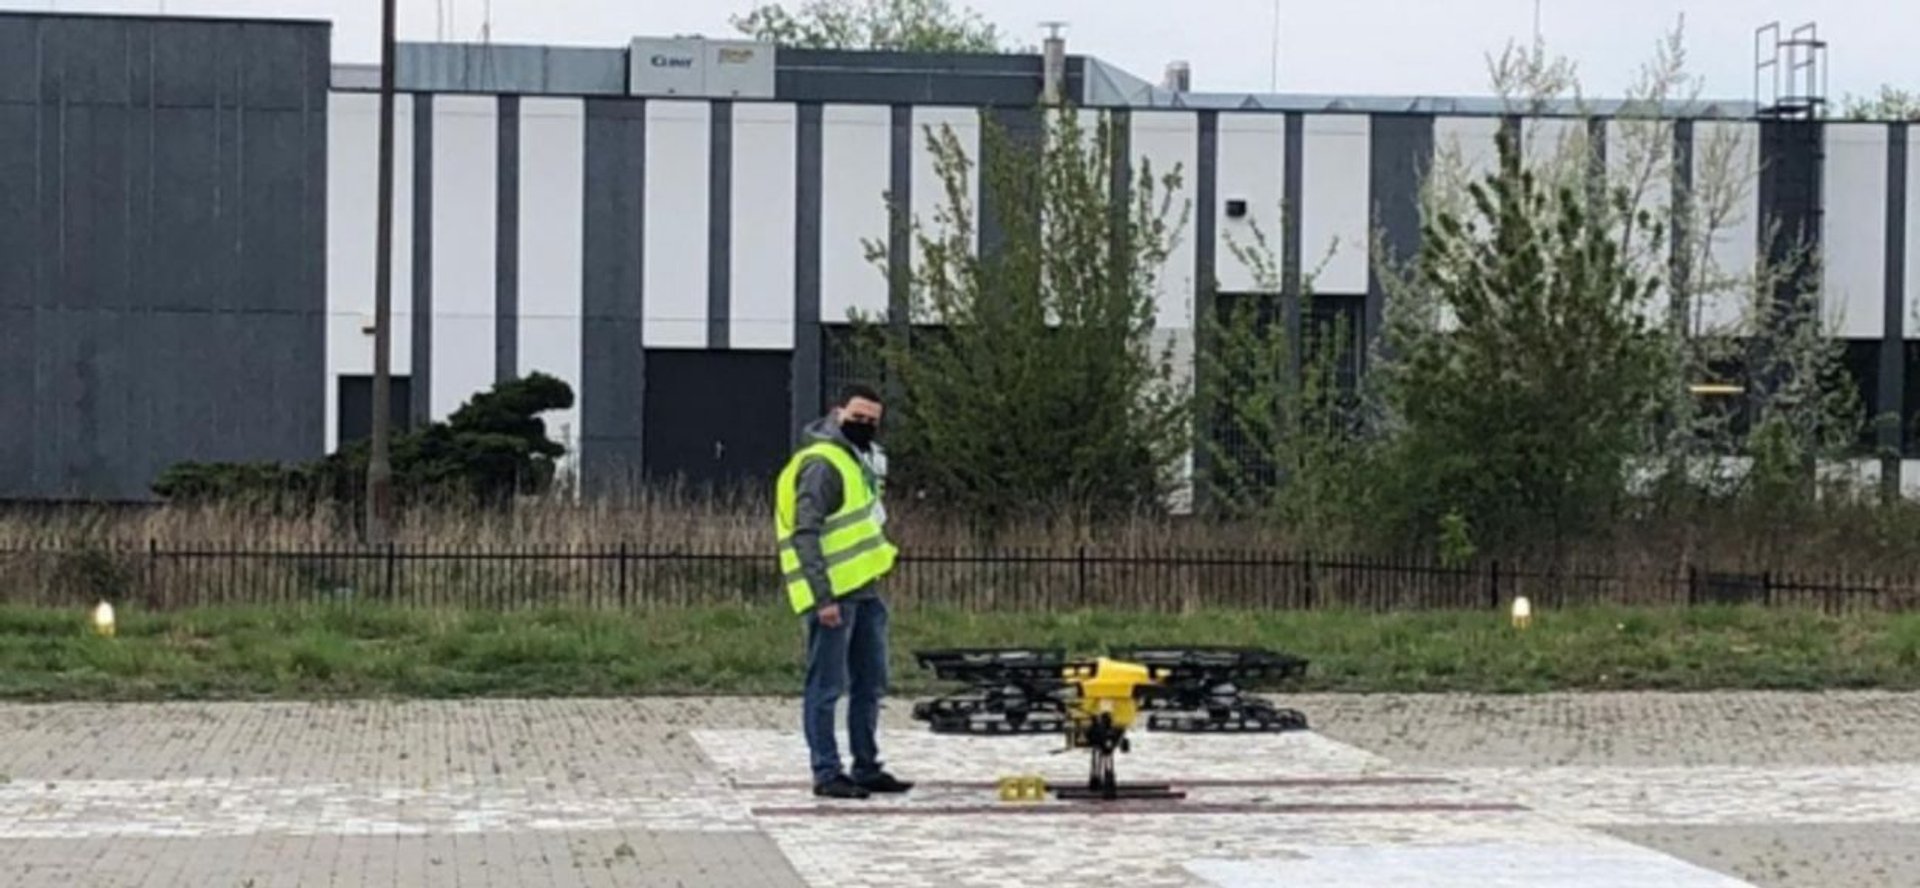 Nad Warszawą kursować będą drony transportowe.